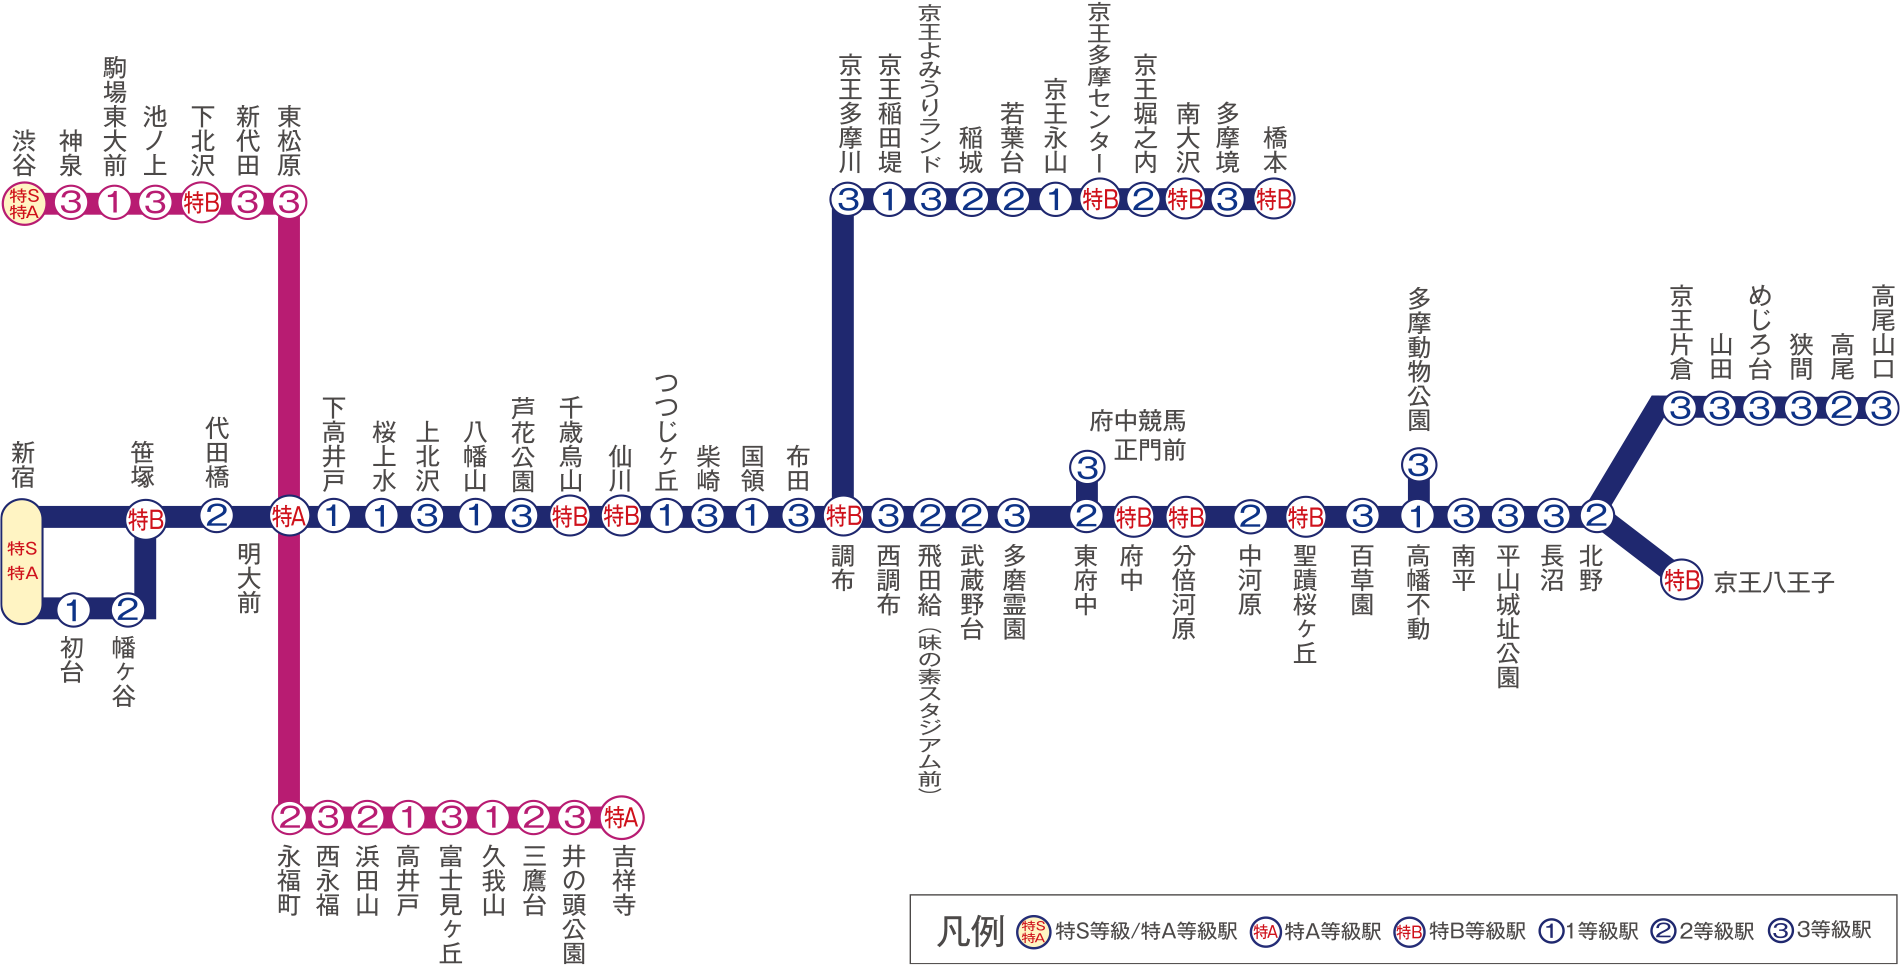 京王線・井の頭線 路線図・駅図